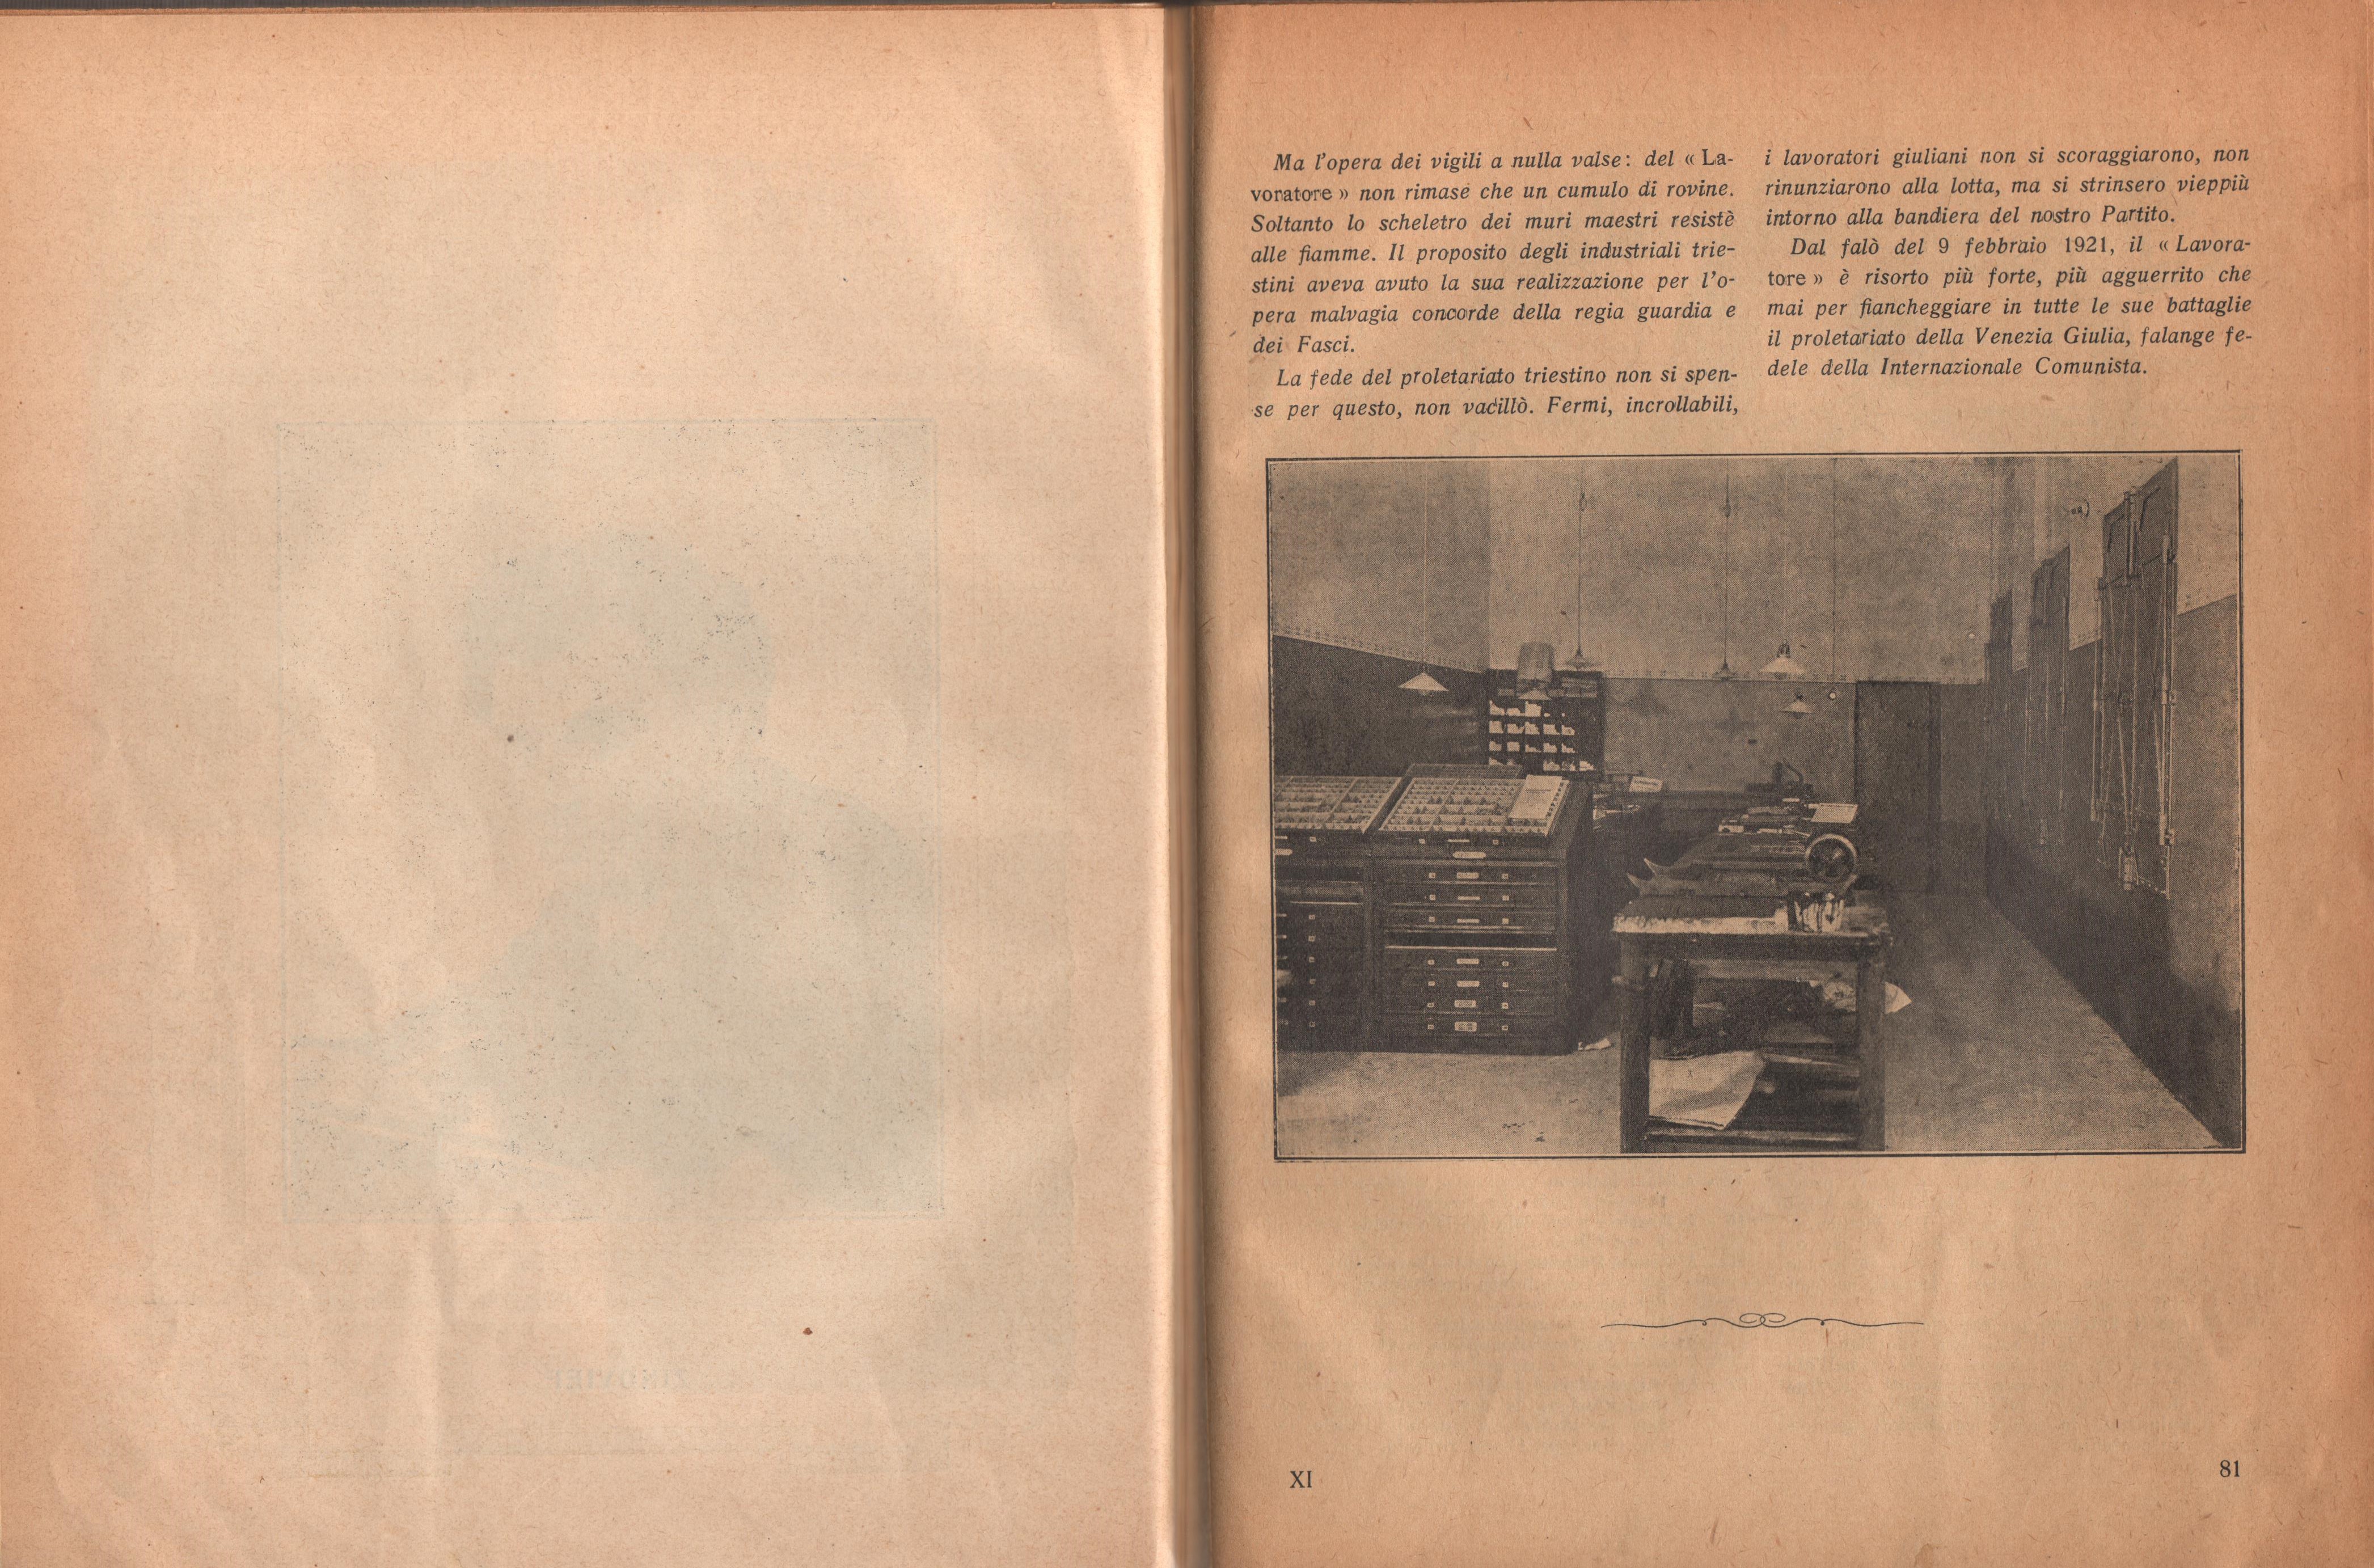 Almanacco comunista 1922 - pag. 49